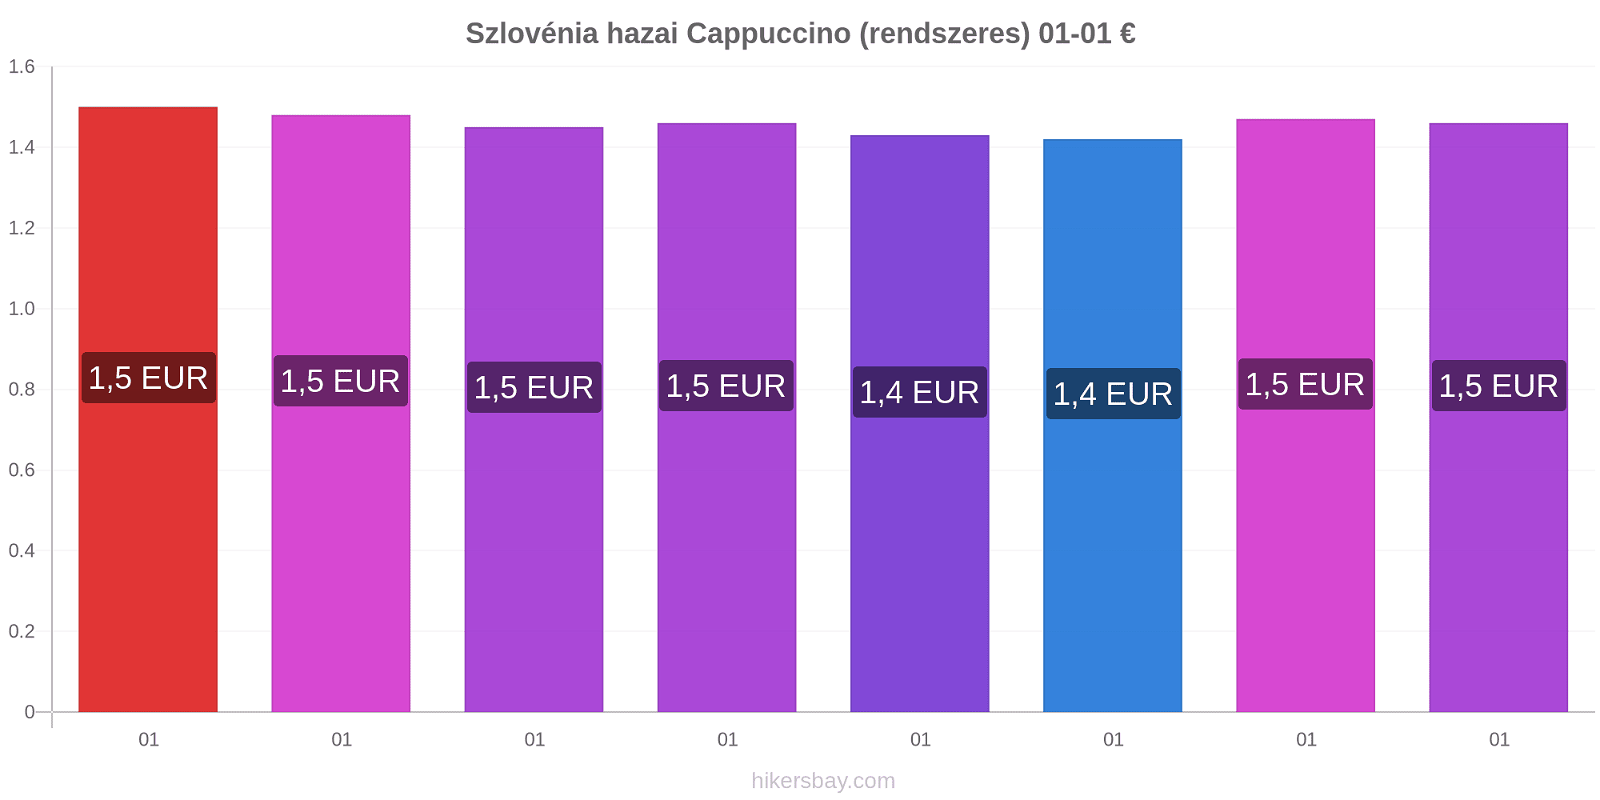 Szlovénia hazai árváltozások Cappuccino (rendszeres) hikersbay.com